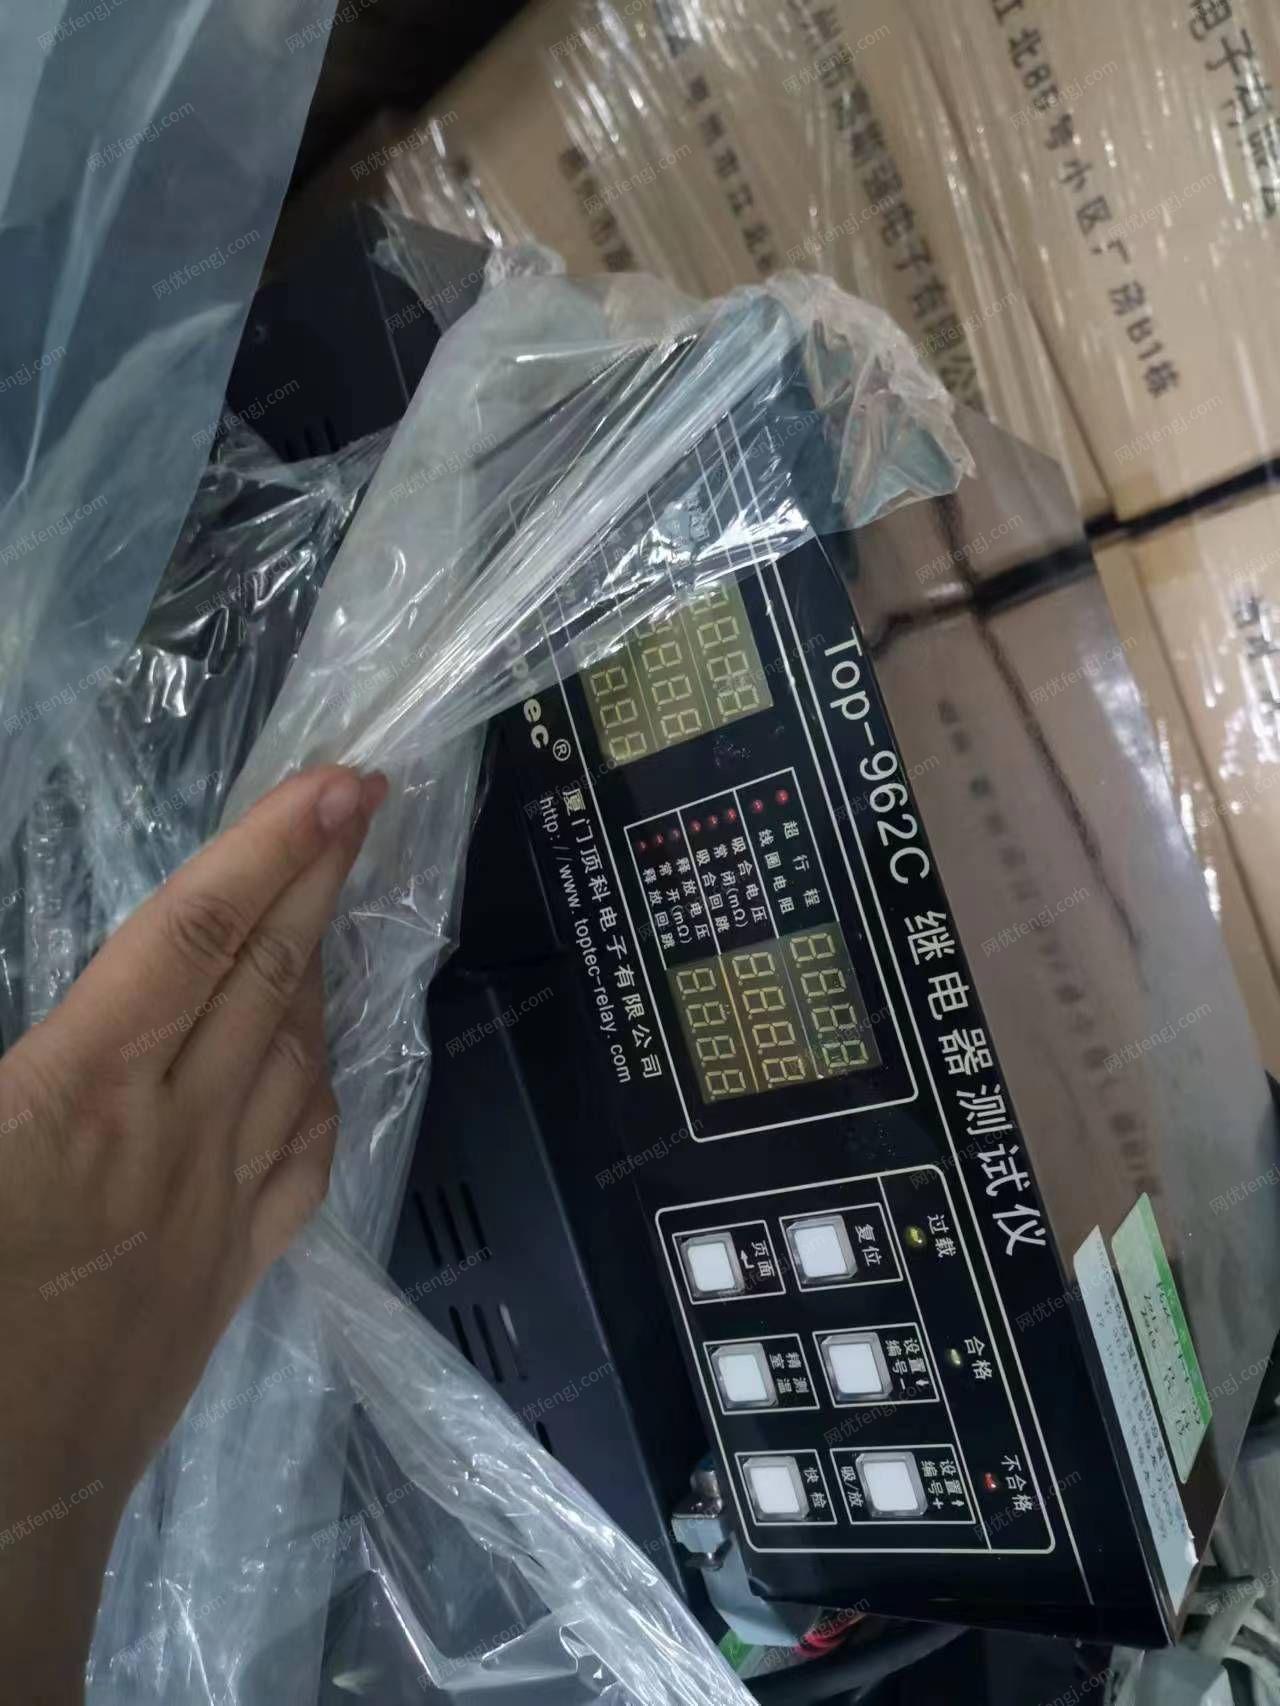 广东惠州出售测试仪